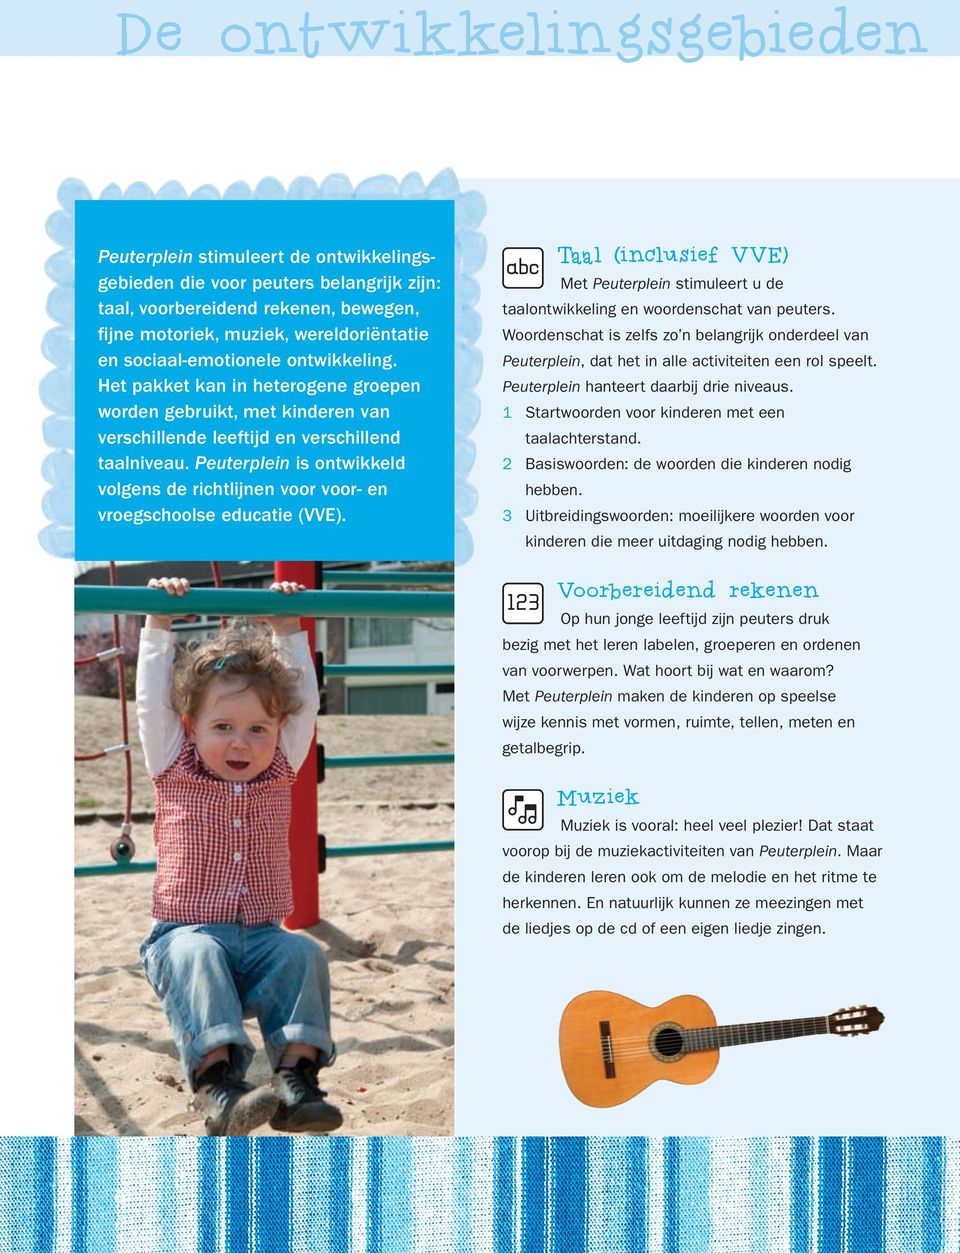 Peuterplein is ontwikkeld volgens de richtlijnen voor voor- en vroegschoolse educatie (VVE). Taal (inclusief VVE) Met Peuterplein stimuleert u de taalontwikkeling en woordenschat van peuters.